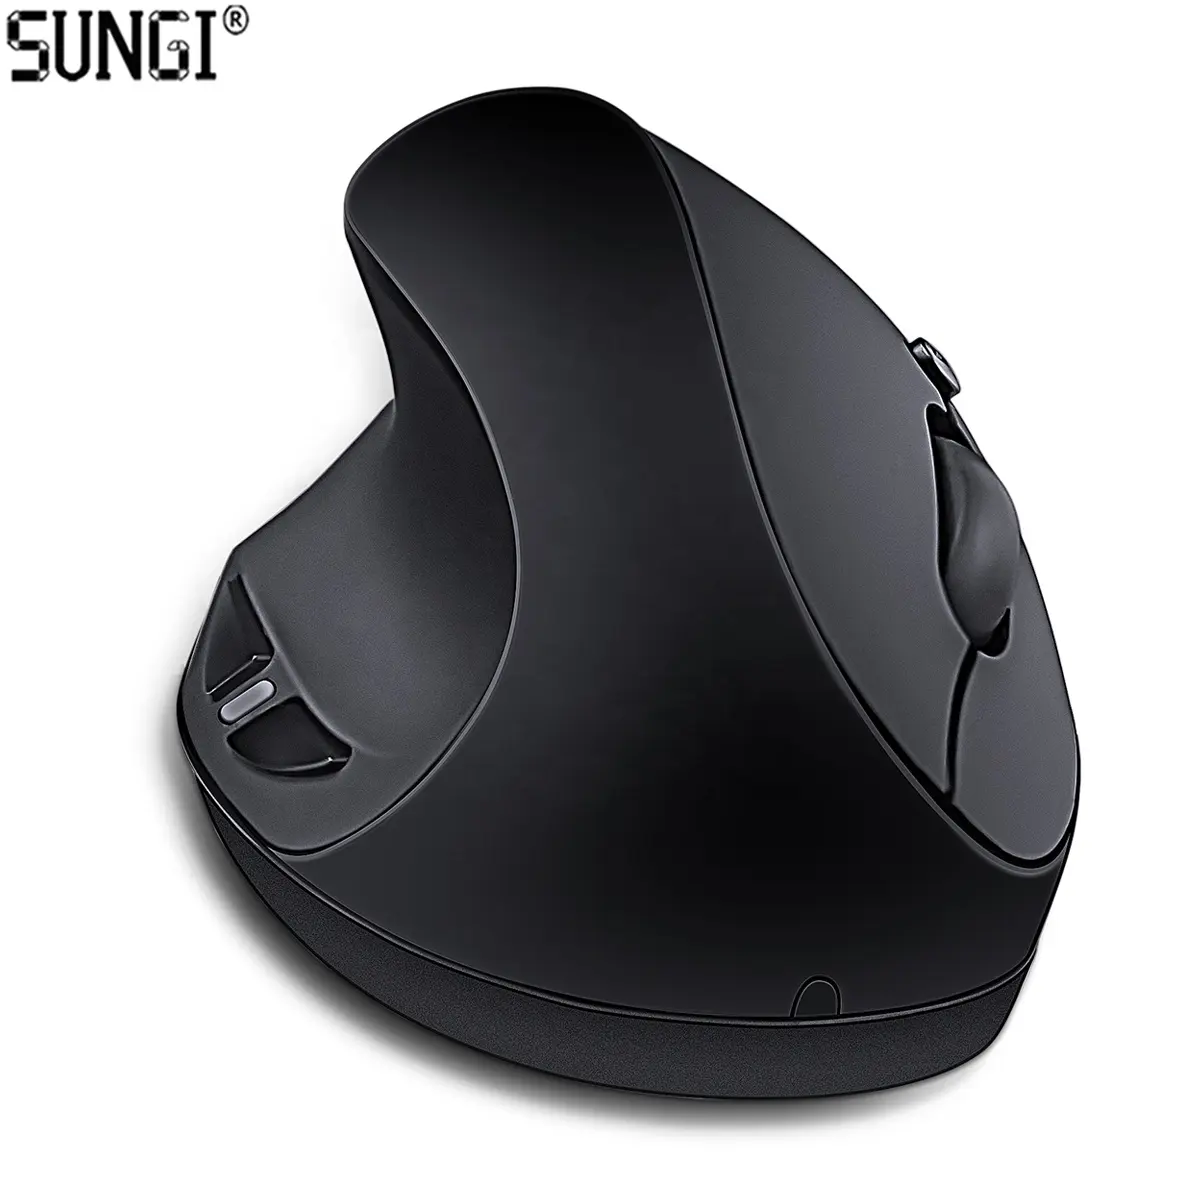 SUNGI-ratón Vertical ergonómico para uso manual, receptor USB inalámbrico, funciona con batería AAA 1000 1200 1600 DPI